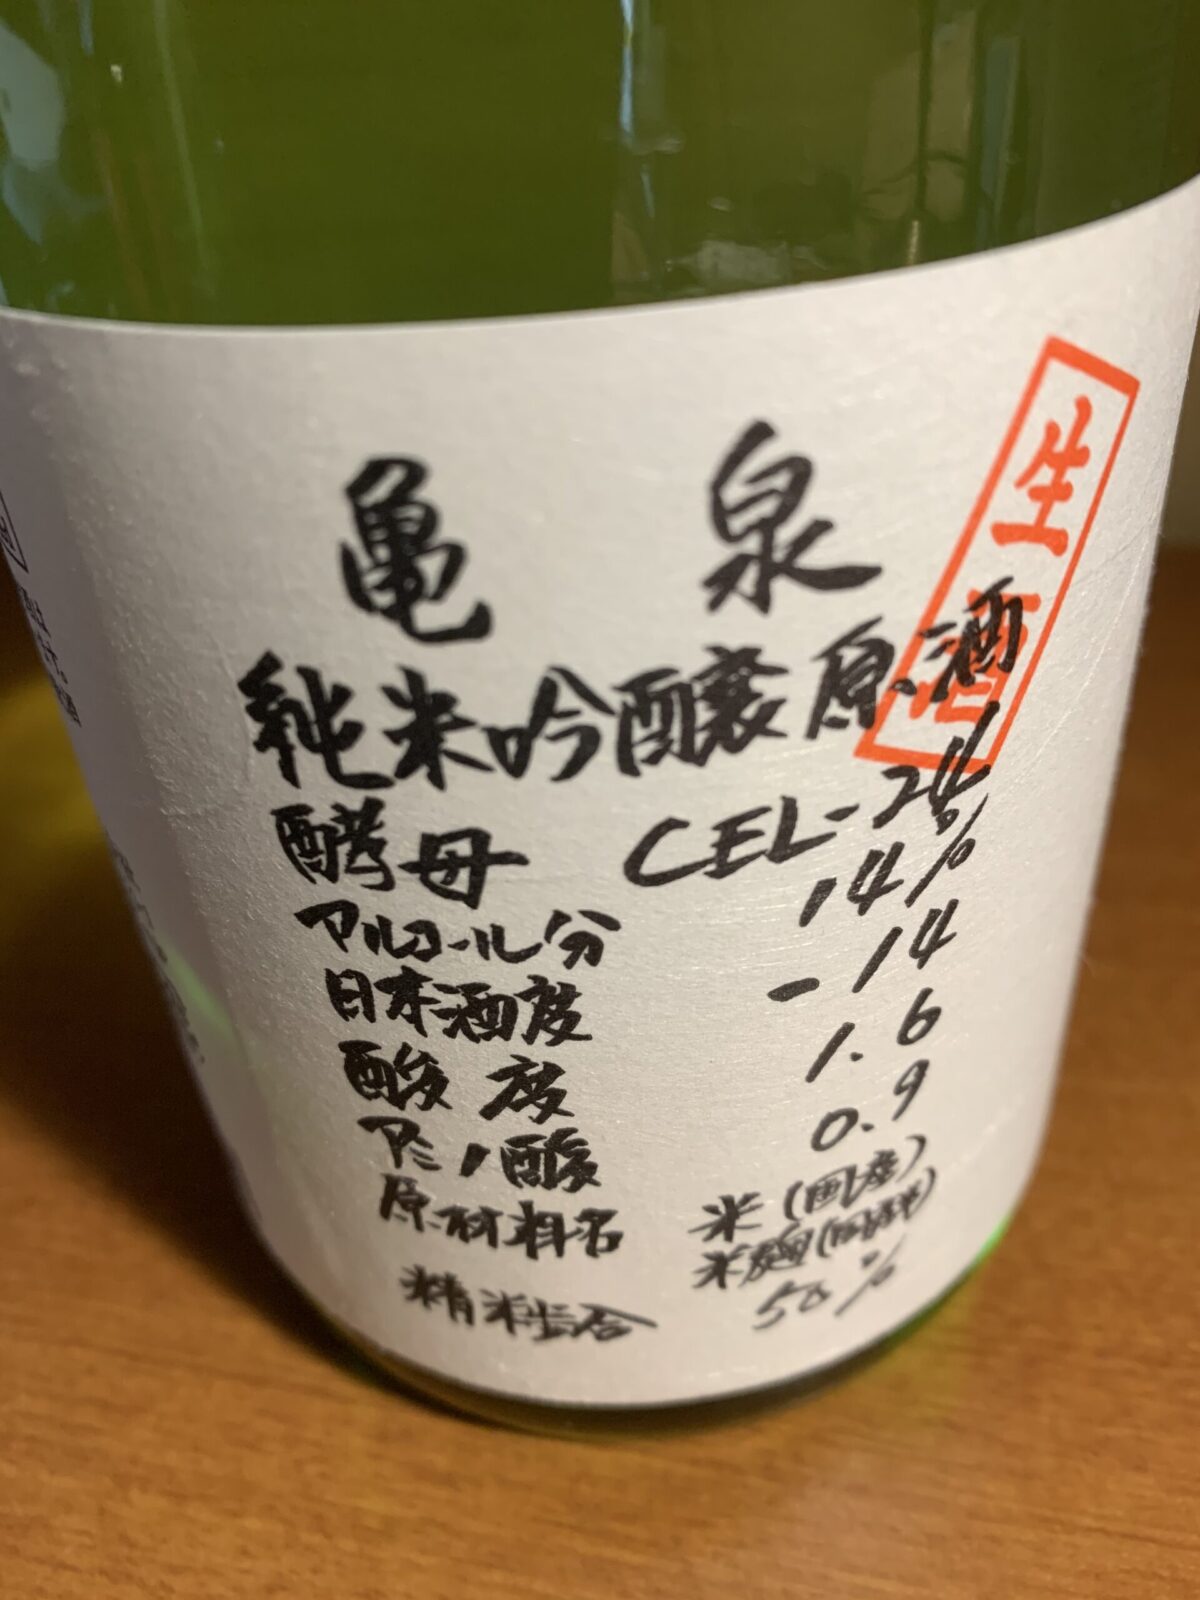 高知の日本酒『亀泉CEL-24』は酸味と甘味が絶妙、 まるで白ワインの味わい